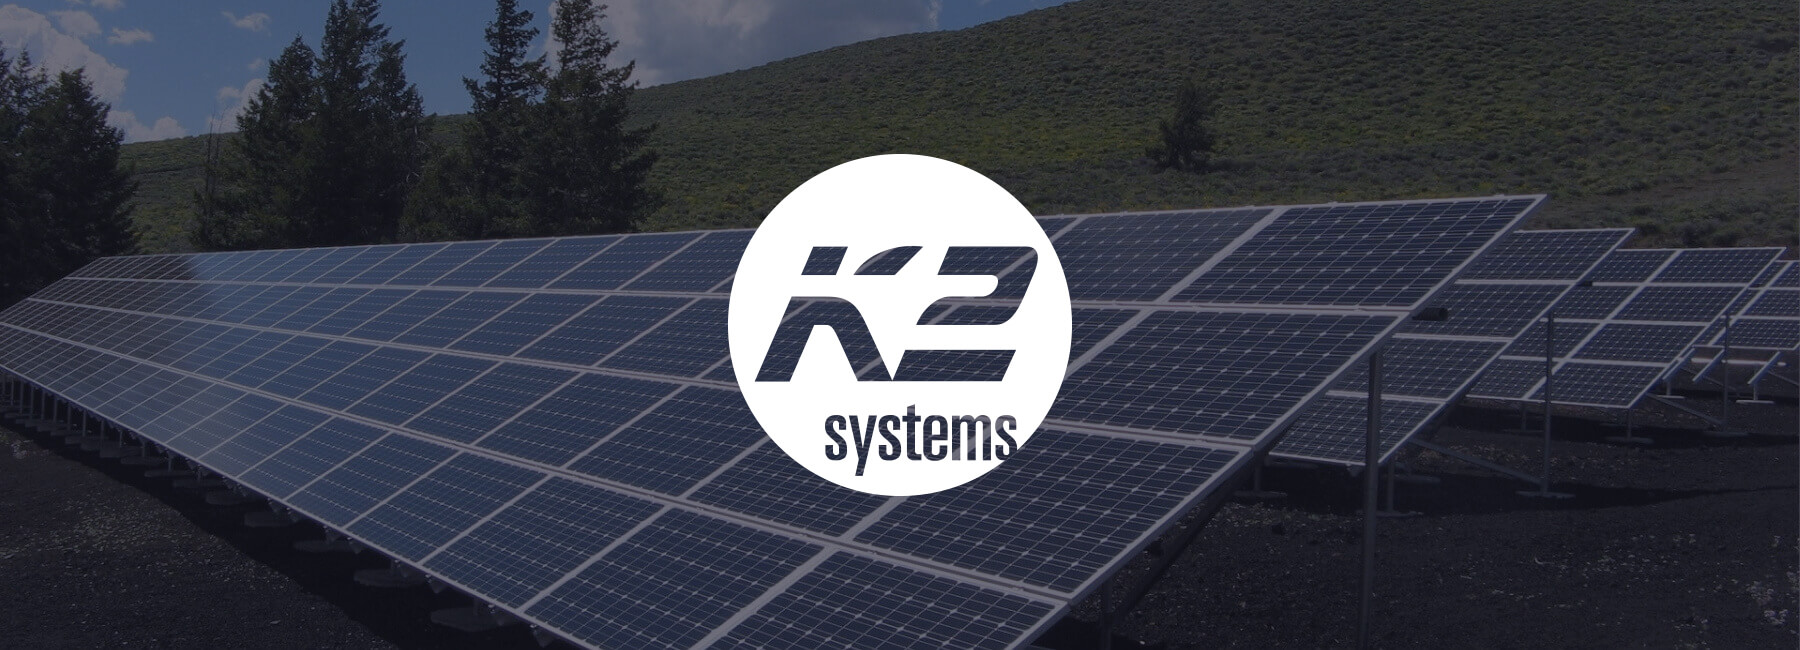 K2 Systems bringt Mopinion in seiner Planungssoftware auf den Markt